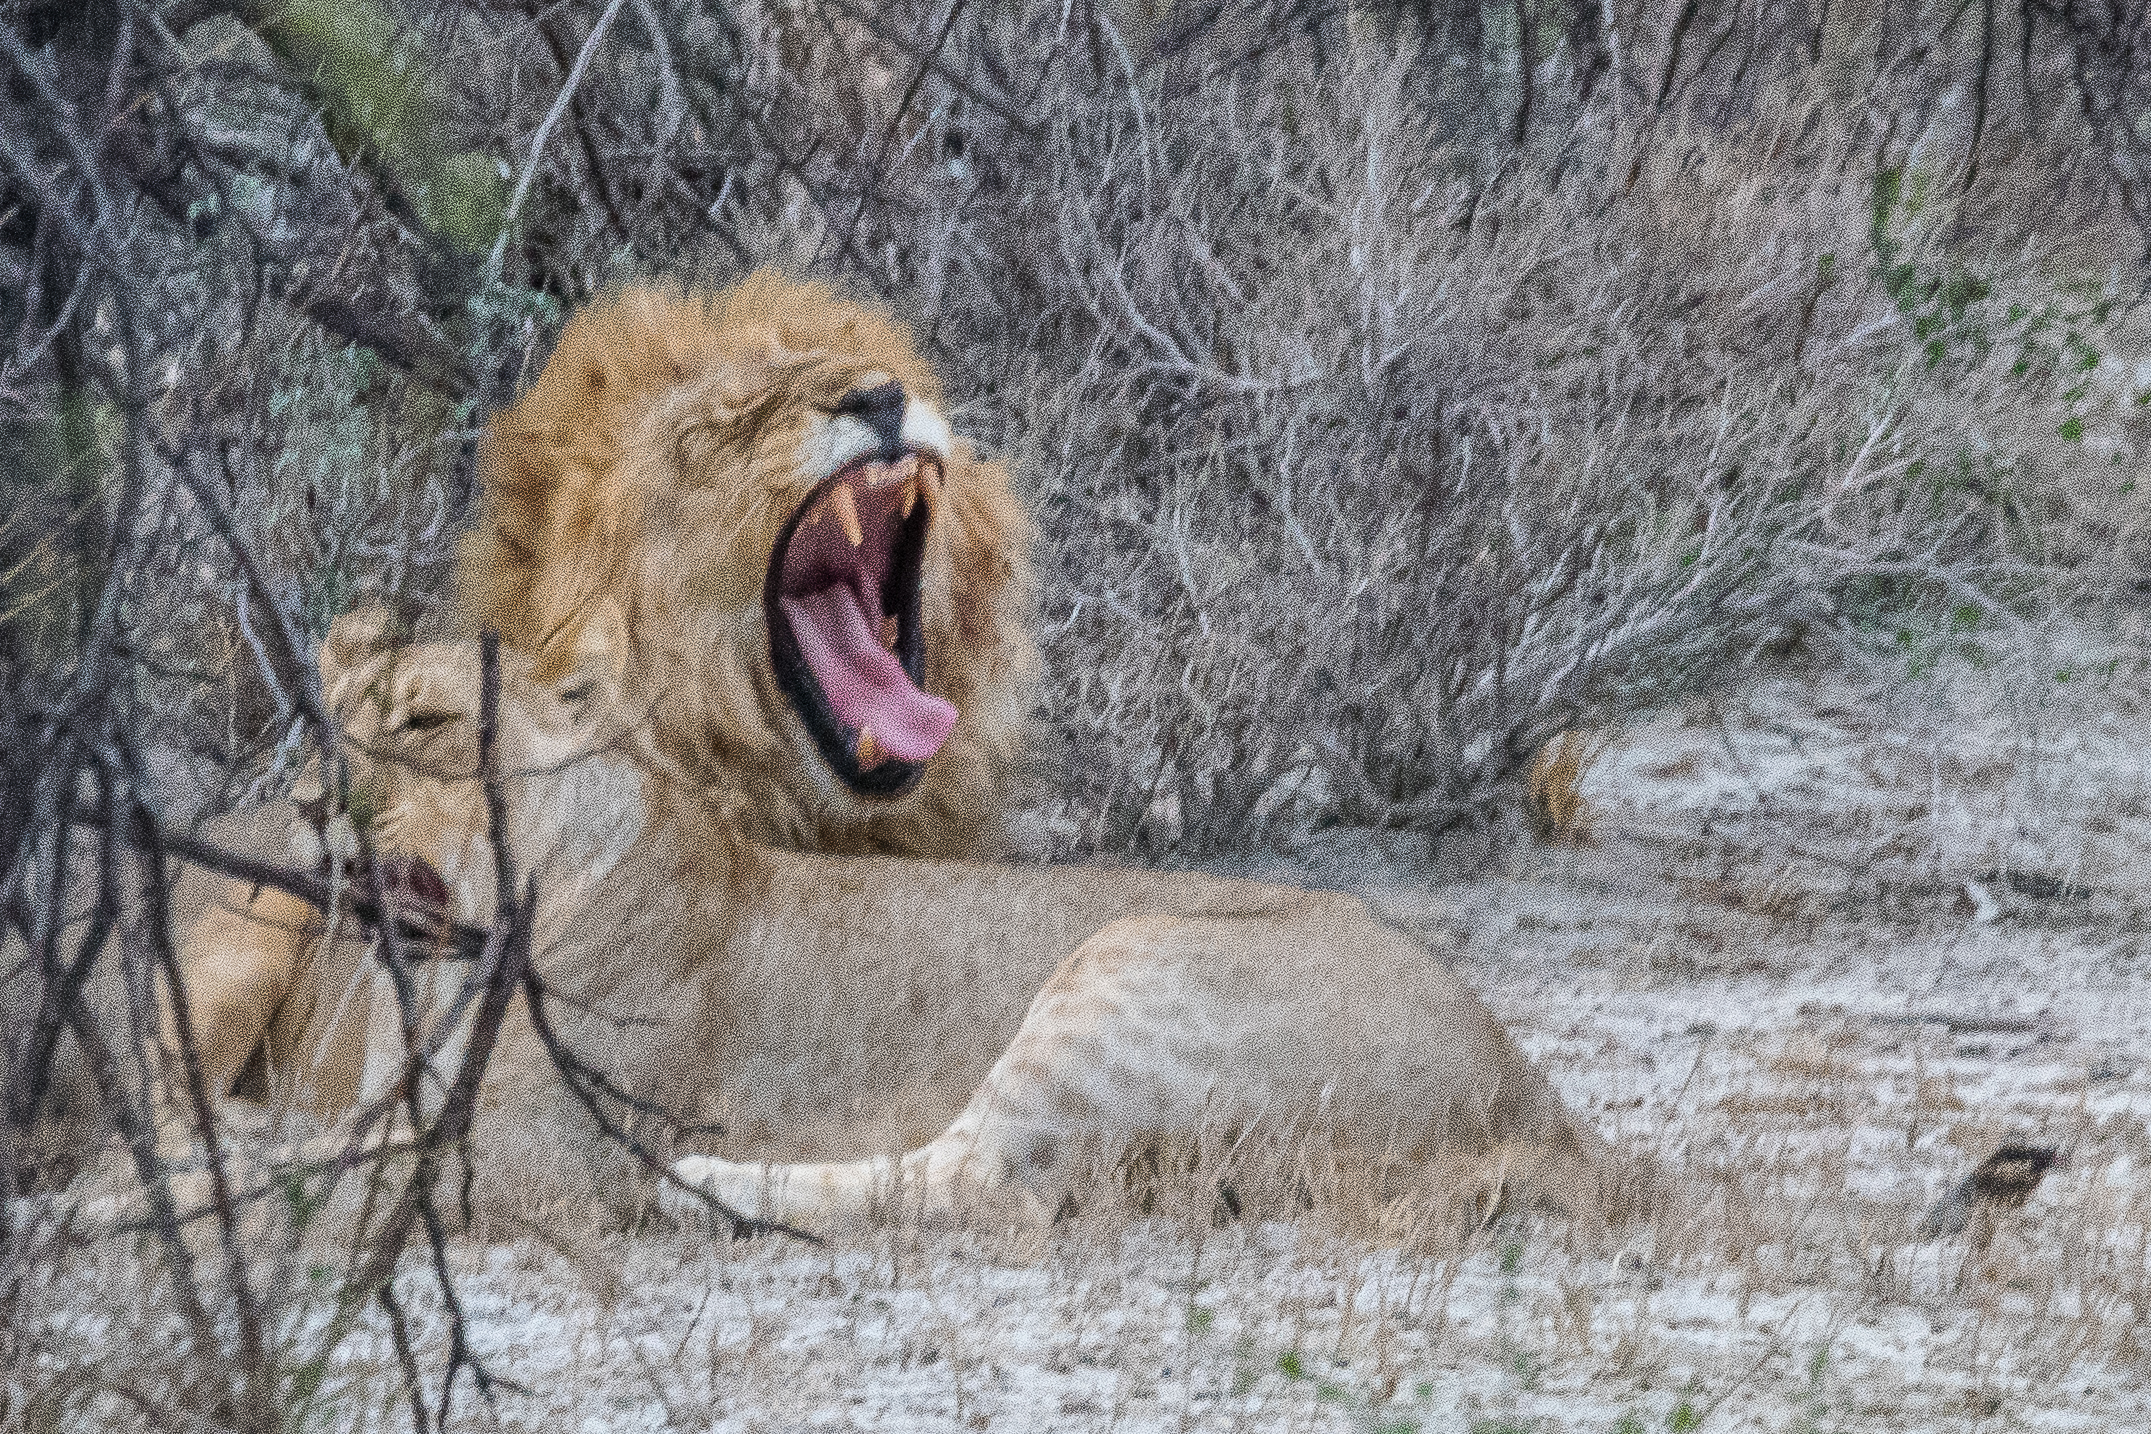 Comportement de flairage de type flehmen (ou flehmen grimace) chez un lion mâle, destiné à détecter la période de fécondité, ou estrus, d'une lionne, Onguma Nature Reserve, Etosha, Namibie